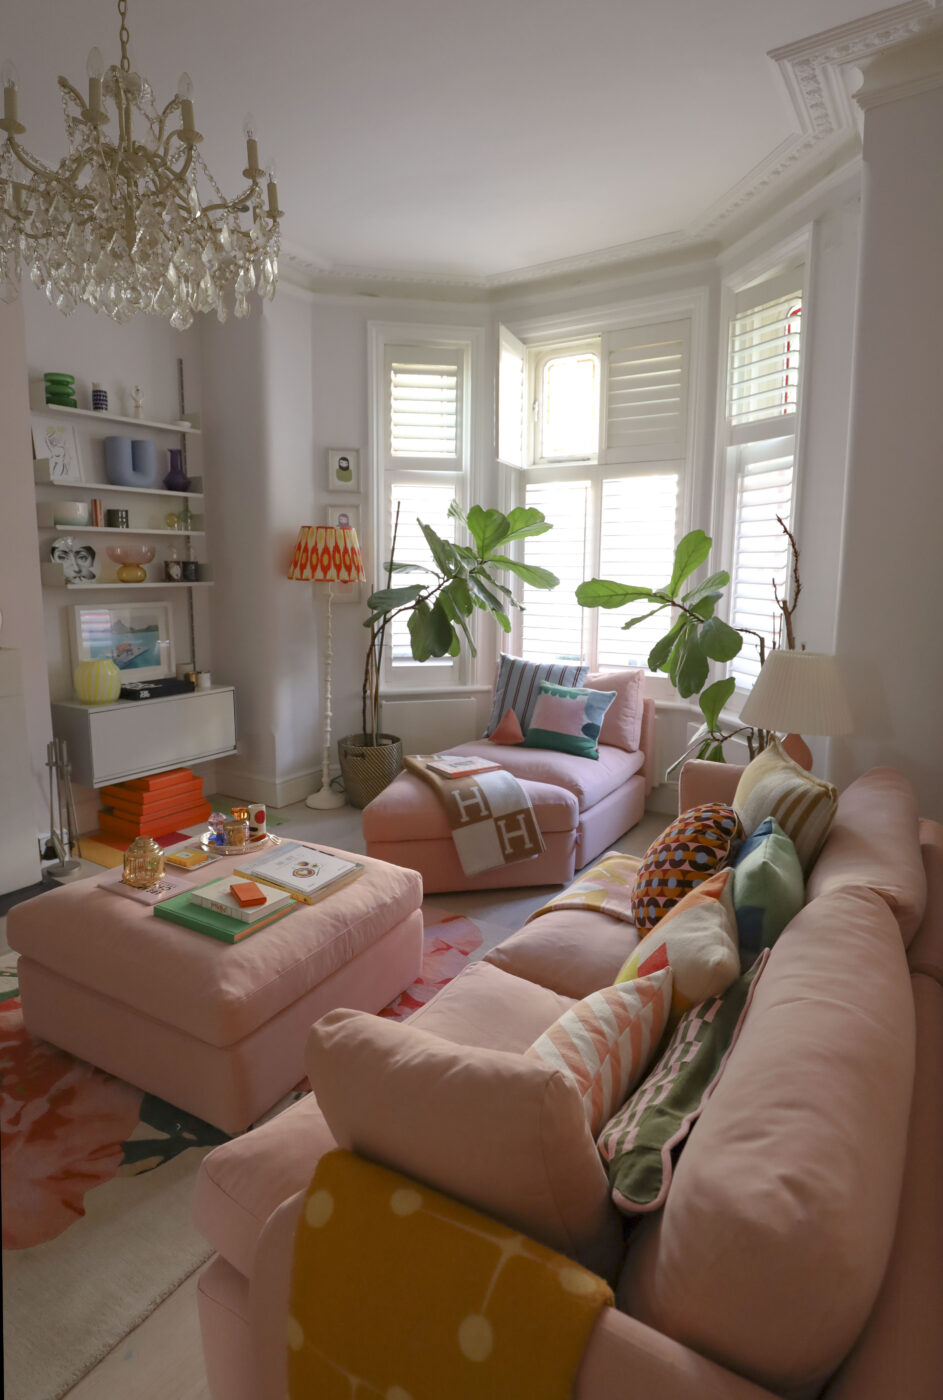 The Ren sofa, a pink modular sofa